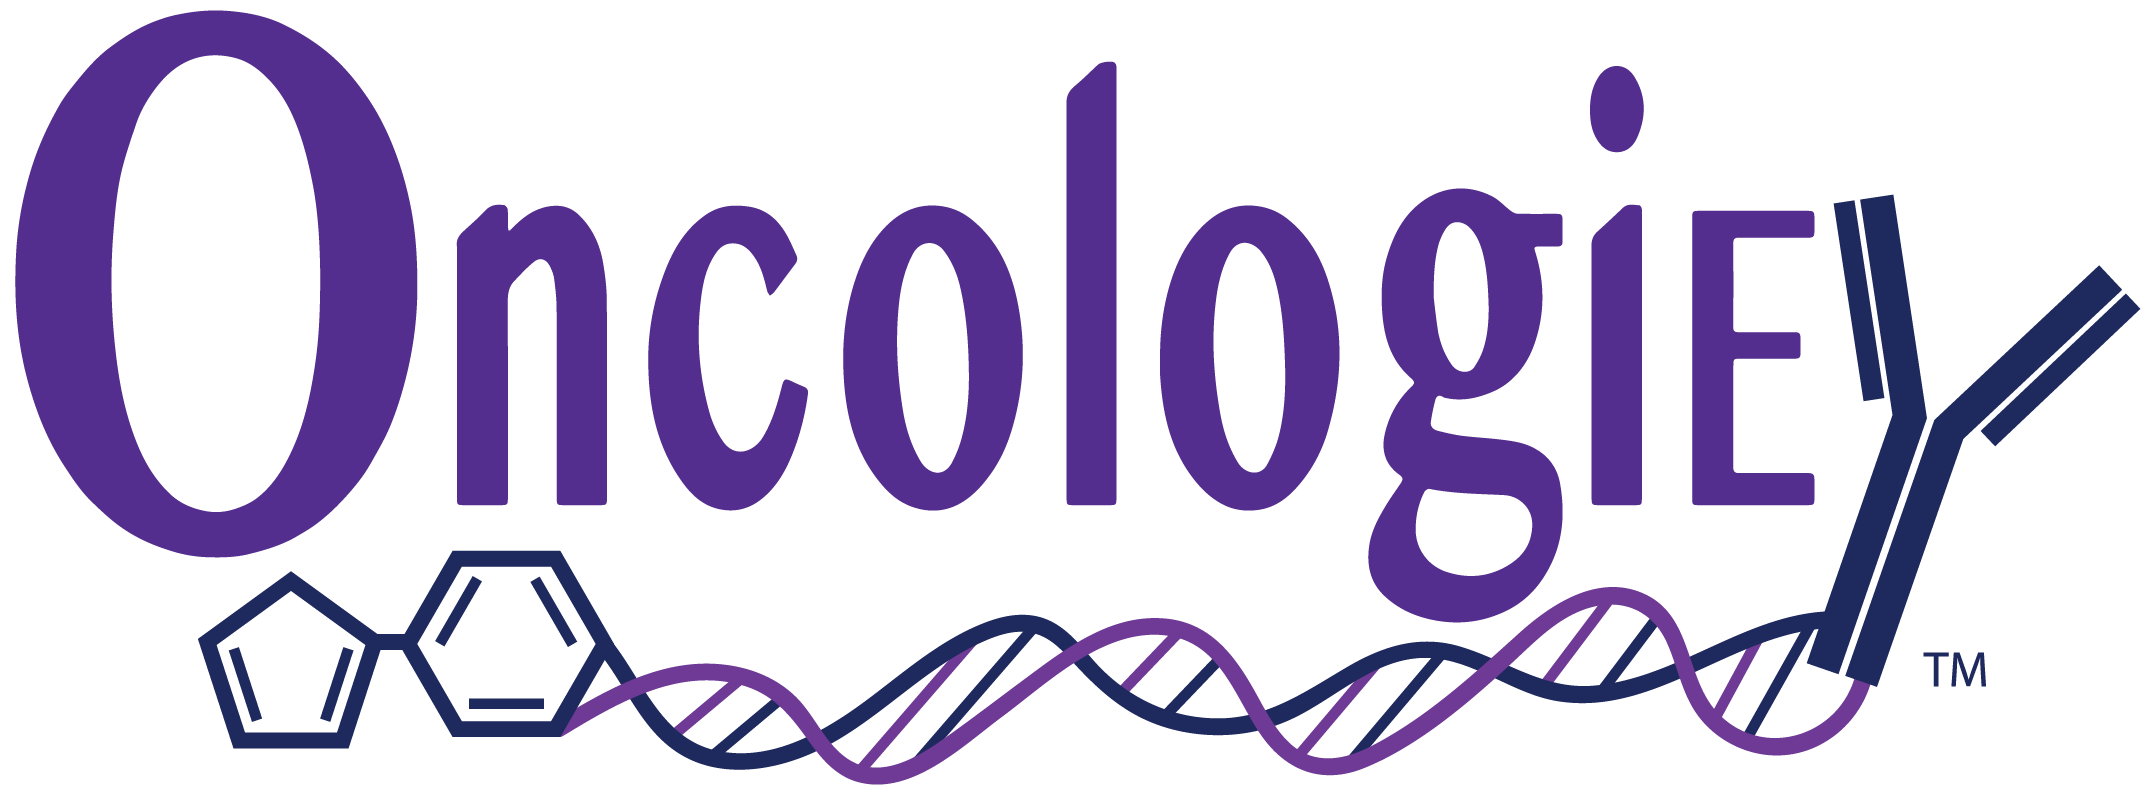 Oncologie_Logo_CMYK.png